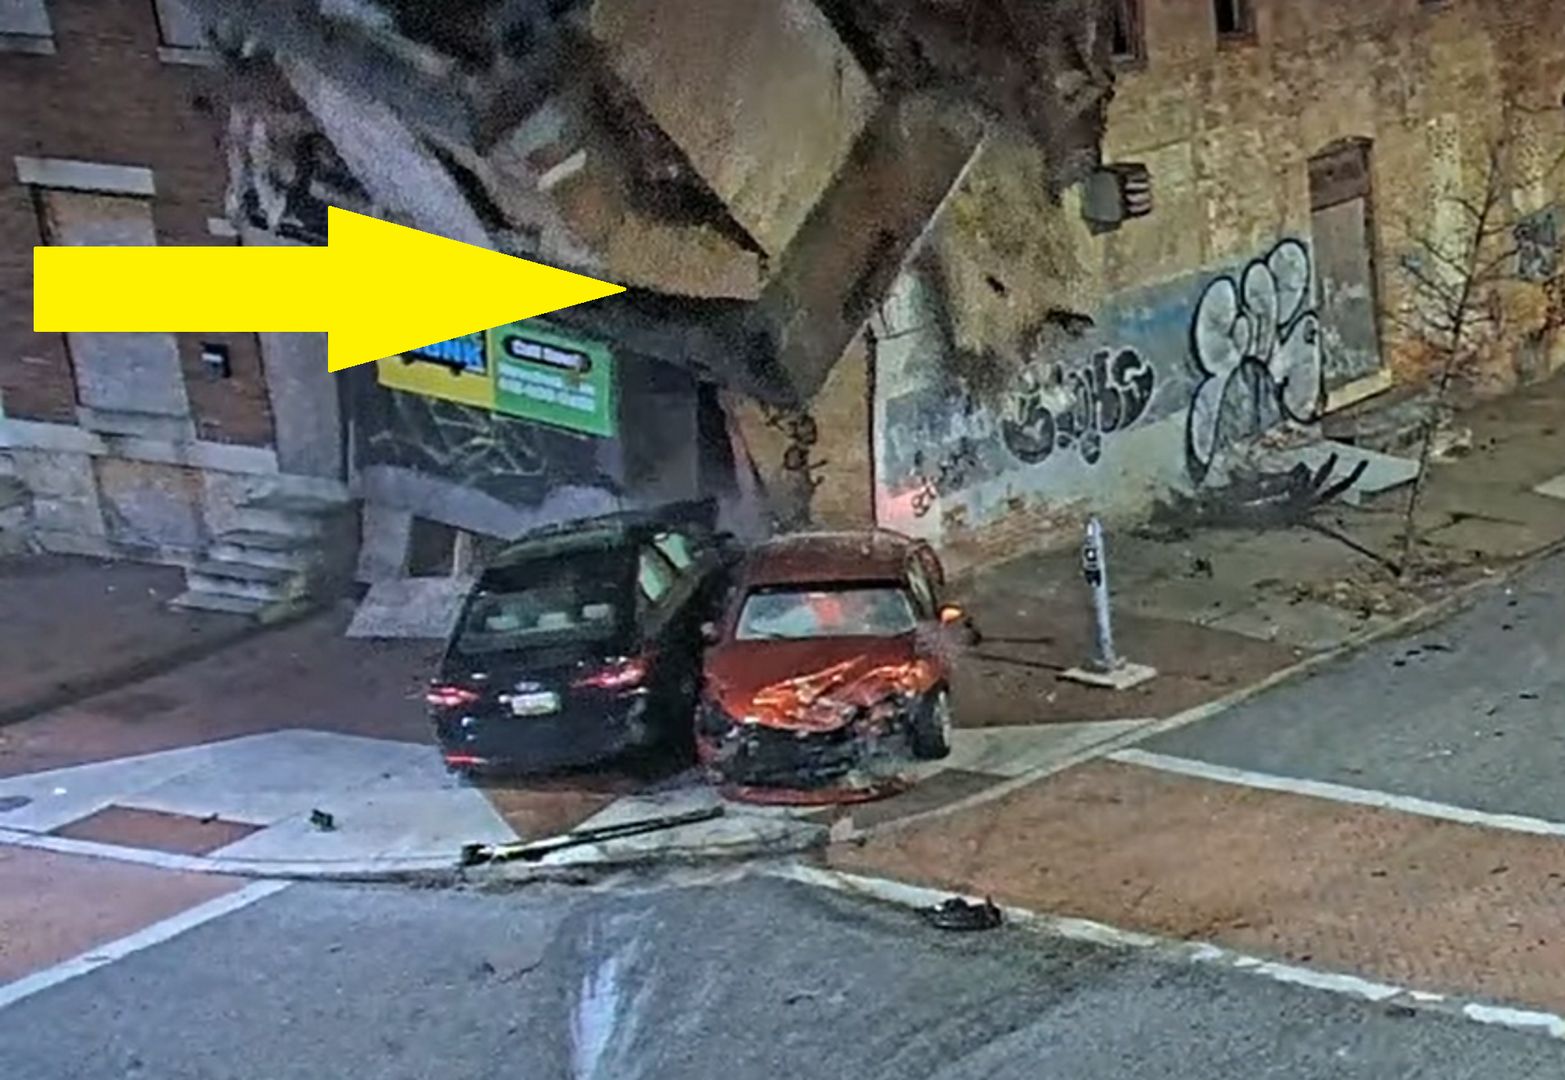 Ściana budynku runęła po uderzeniu auta. Policja pokazała wideo z wypadku